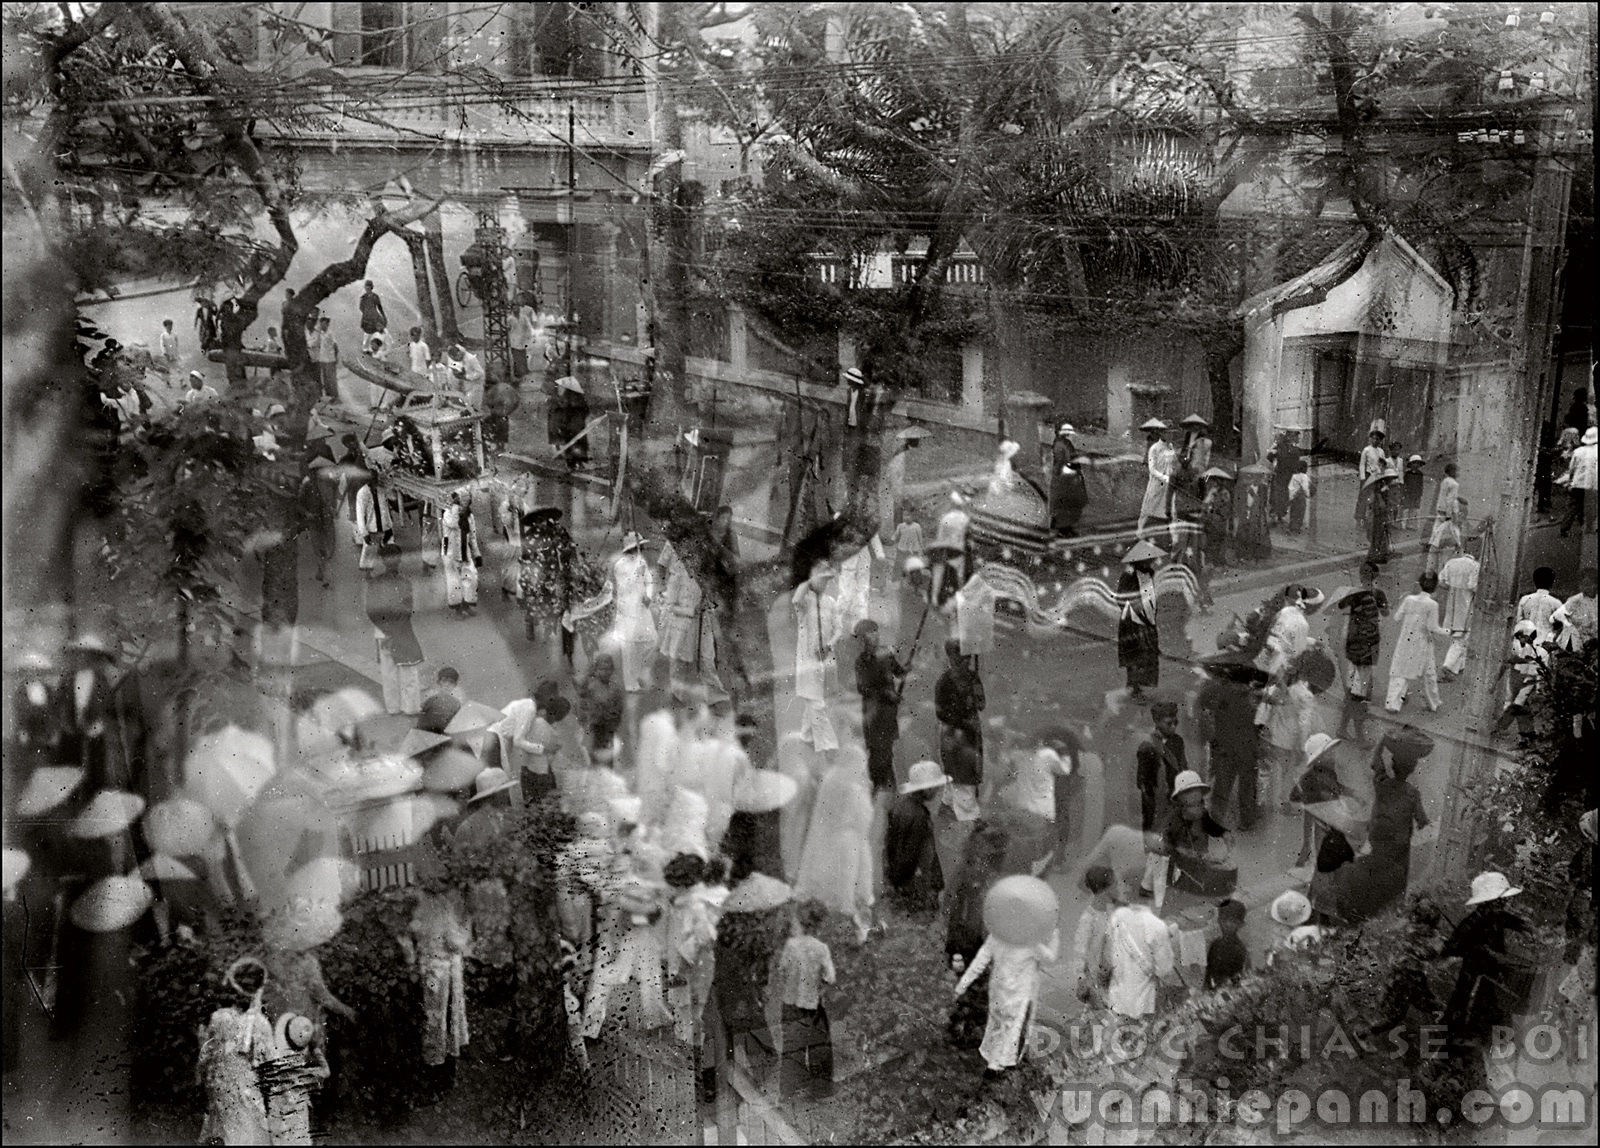 Hà Nội những năm thập niên 30. Ảnh chụp dùng kỹ thuật phơi sáng kép (double exposure) của một nhiếp ảnh gia vô danh.